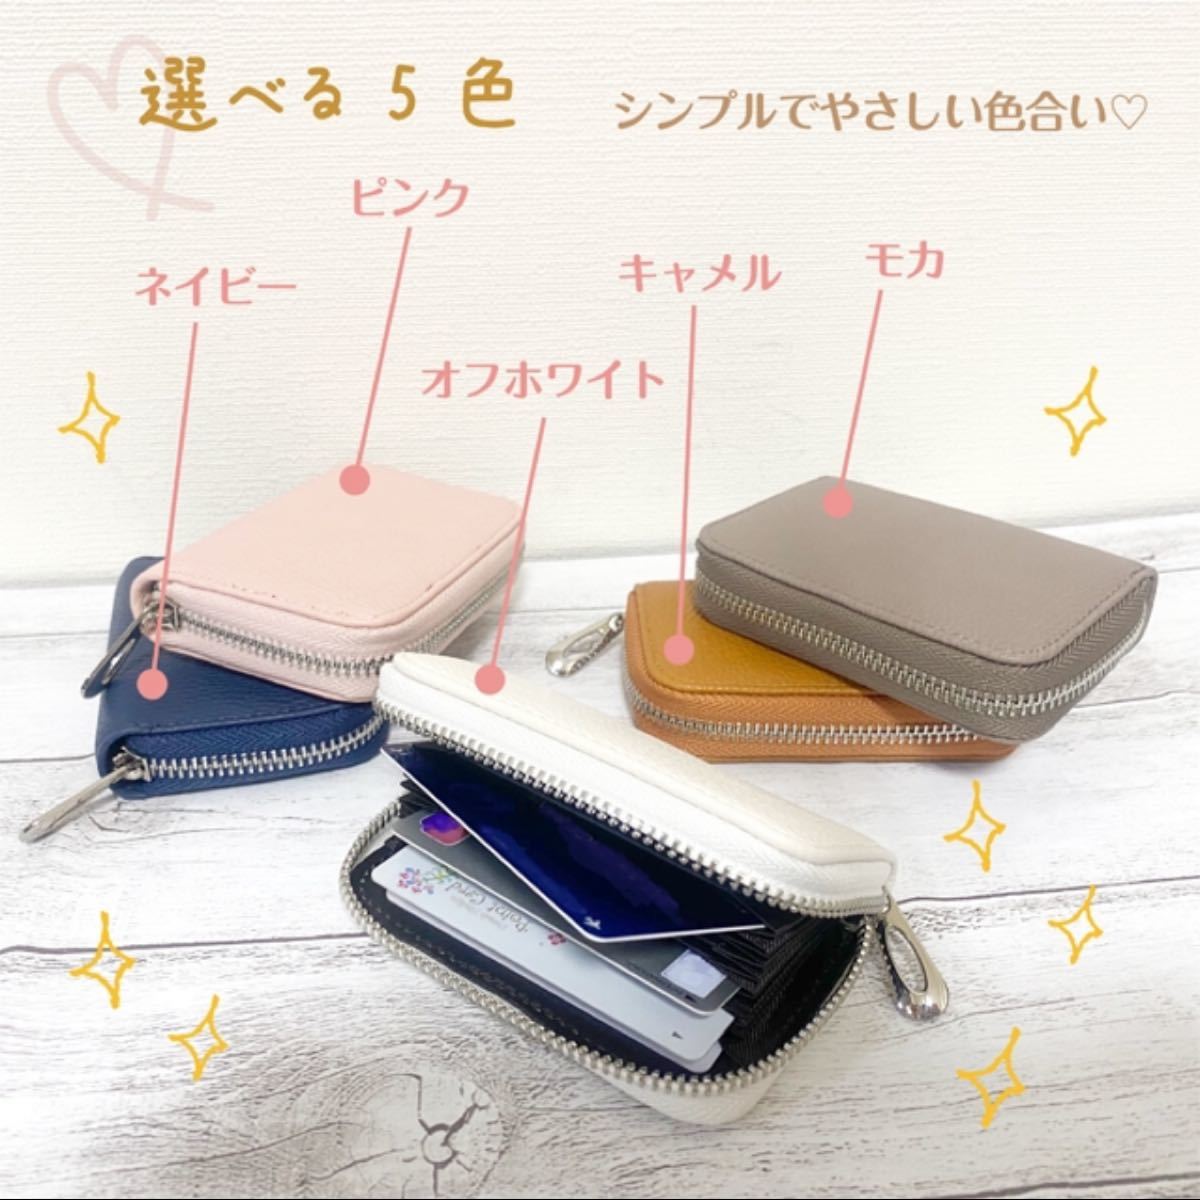 【モカ】小さなバッグでもちょこんと収まるスキミング防止本革カードケース